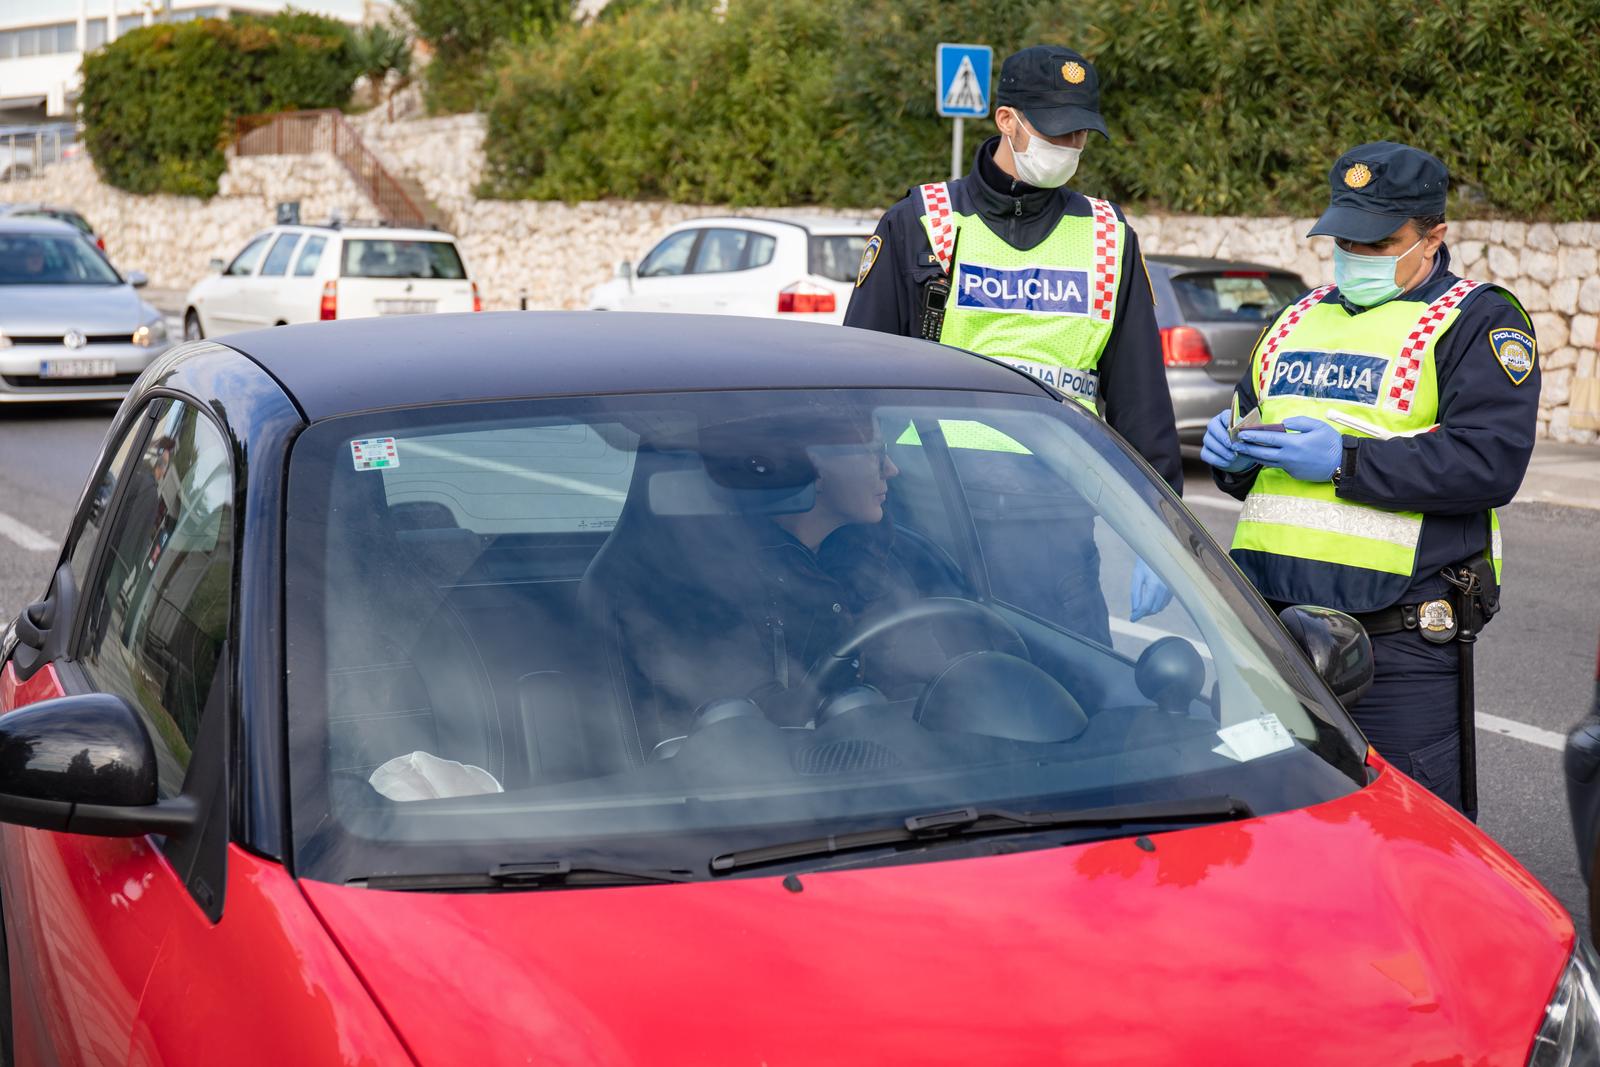 23,12,2020., Ulica Iva Vojnovica, Dubrovnik - U okviru akcije policijski sluzbenici provode pojacani nadzor vozila i vozaca usmjeren na sprecavanje i sankcioniranje najtezih prometnih prekrsaja koji nerijetko dovode do najtezih stradavanja u prometu, a to su prije svega prekrsaji voznje pod utjecajem alkohola, nepostivanje dopustene brzine kretanja vozila, nekoristenje sigurnosnog pojasa i nepropisna uporaba mobitela tijekom voznje. Akciji se na podrucju Dubrovnika pridruzio i poznati dubrovacki glumac Branimir Vidic – Flika koji je danas ispred hotela Lero, zajedno s nacelnikom Policijske uprave Ivanom Pavlicevicem, vozacima koji u sklopu prometne kontrole nisu bili zateceni u prometnom prekrsaju, urucio prigodni poklon.  
Photo: Grgo Jelavic/PIXSELL